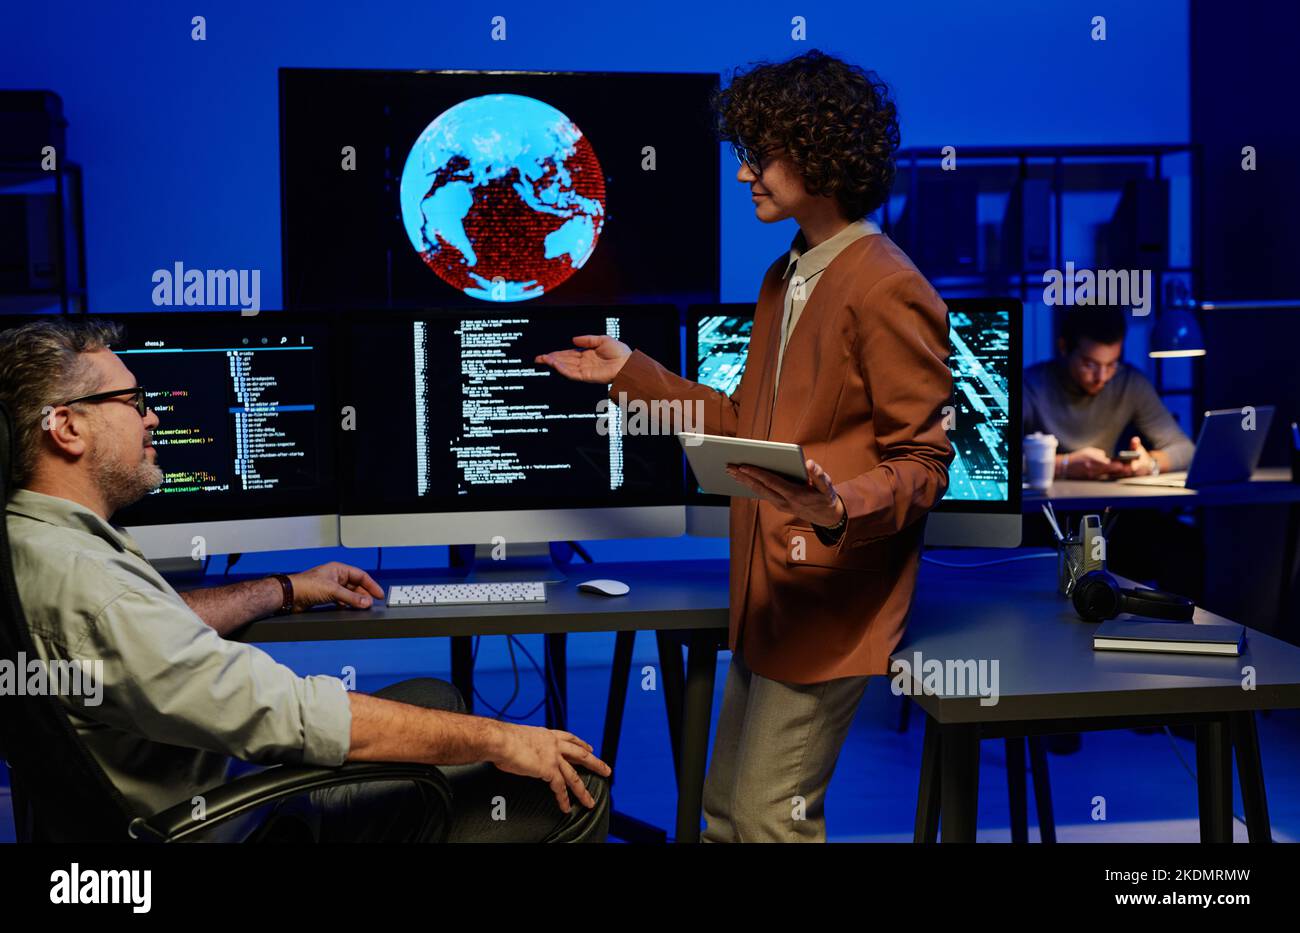 Joven programador mujer confiada en informar a un compañero adulto mientras apunta a la pantalla del ordenador con datos codificados Foto de stock